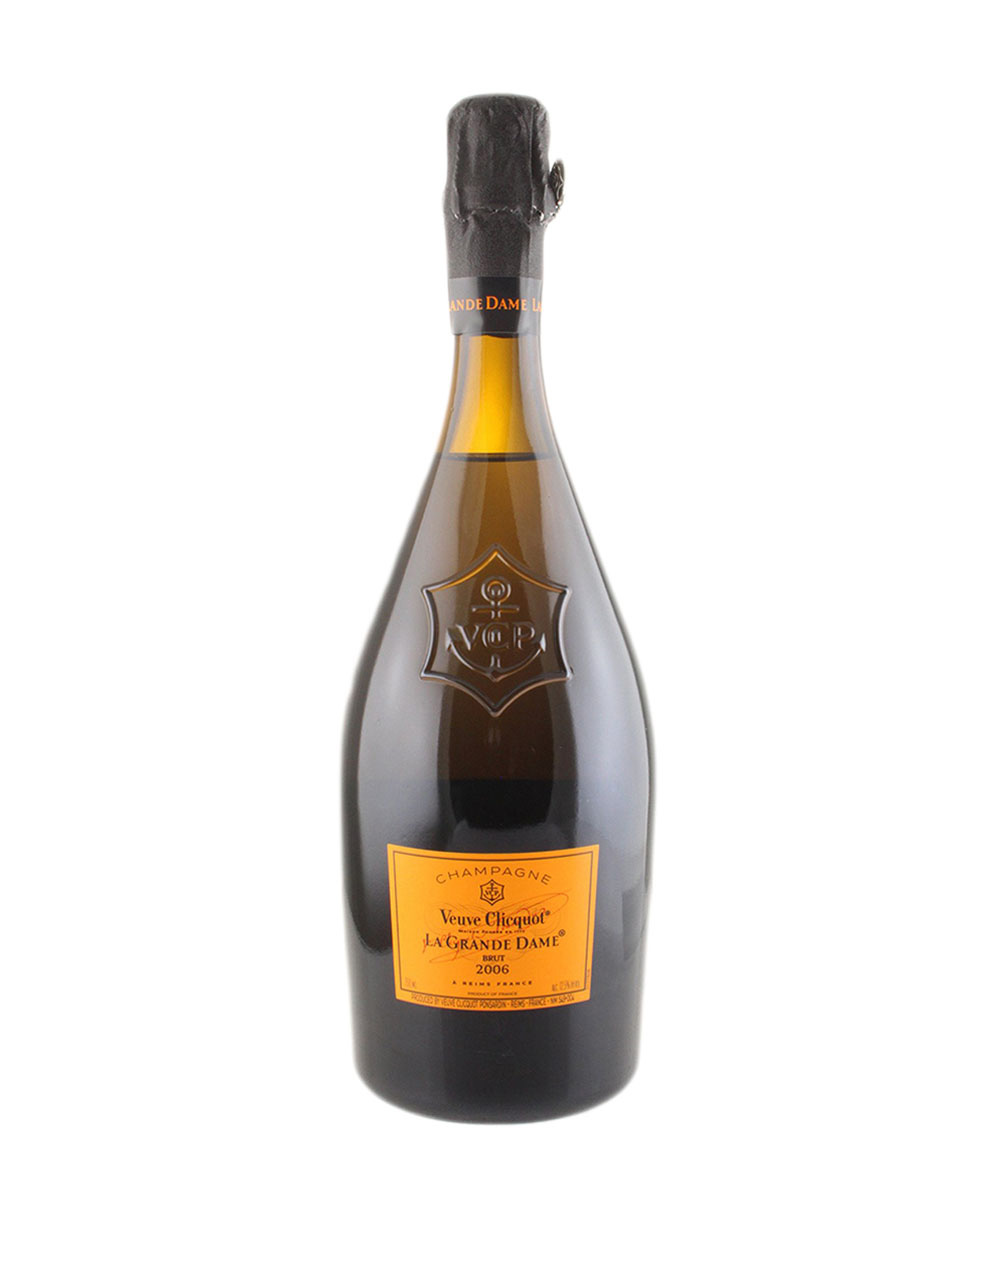 Veuve Clicquot Ponsardin 2006 La Grande Dame Brut Champagne